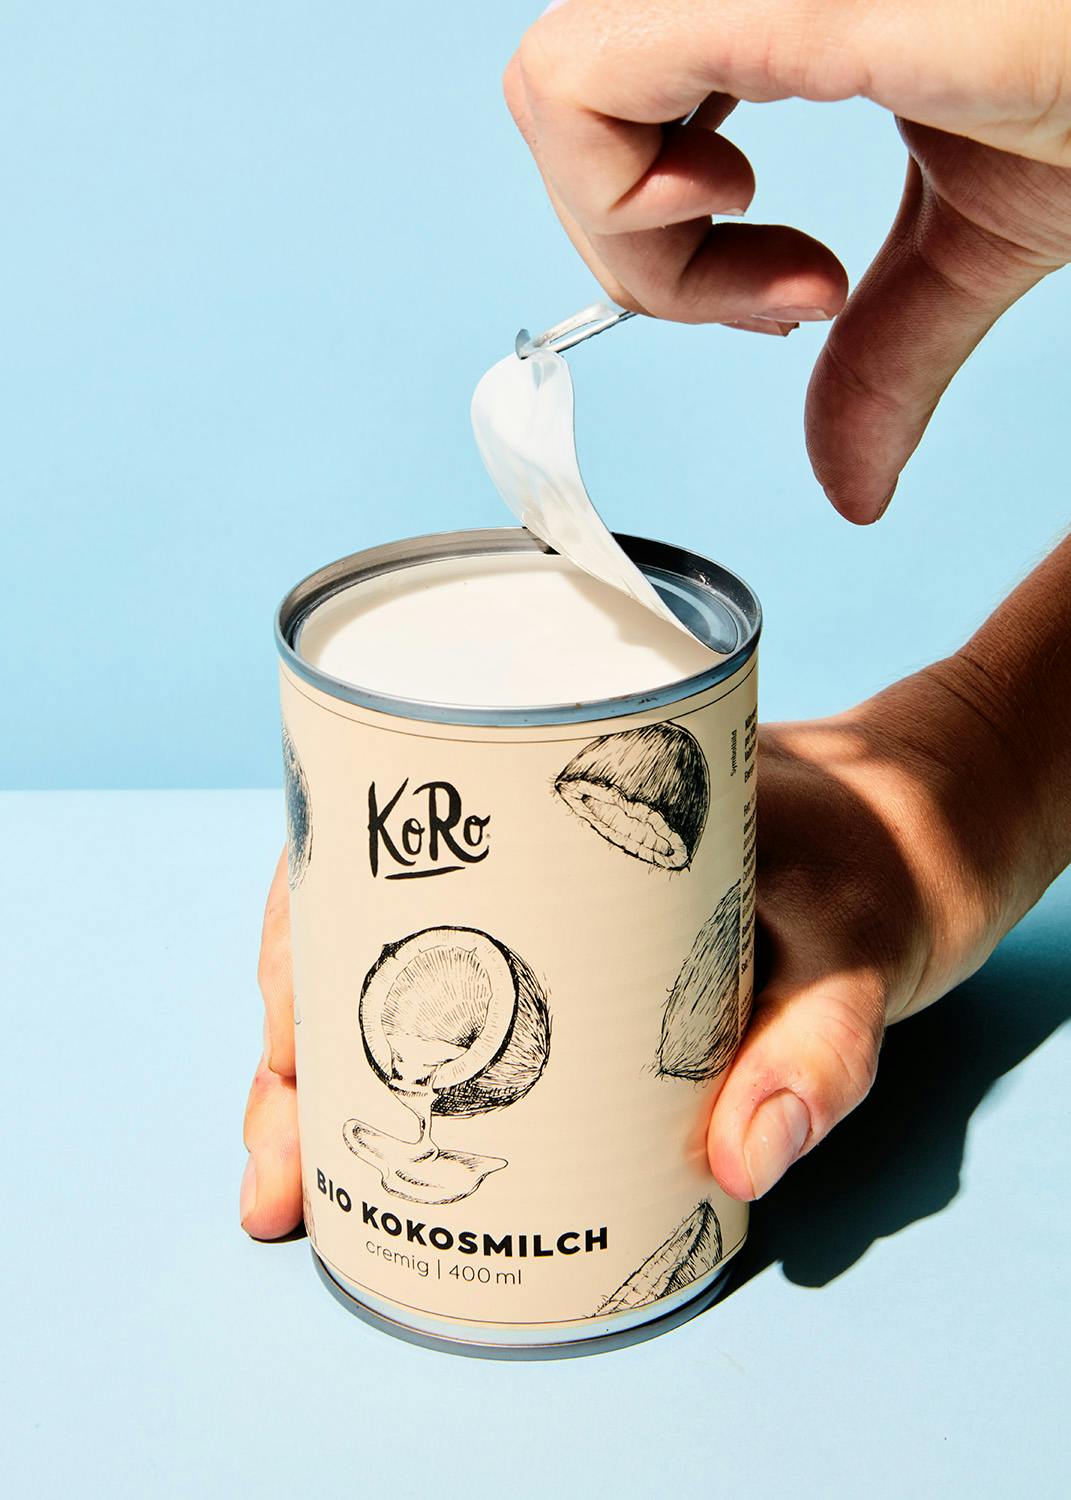 Latte di Cocco biologico in lattina per cucinare 200ml marchio